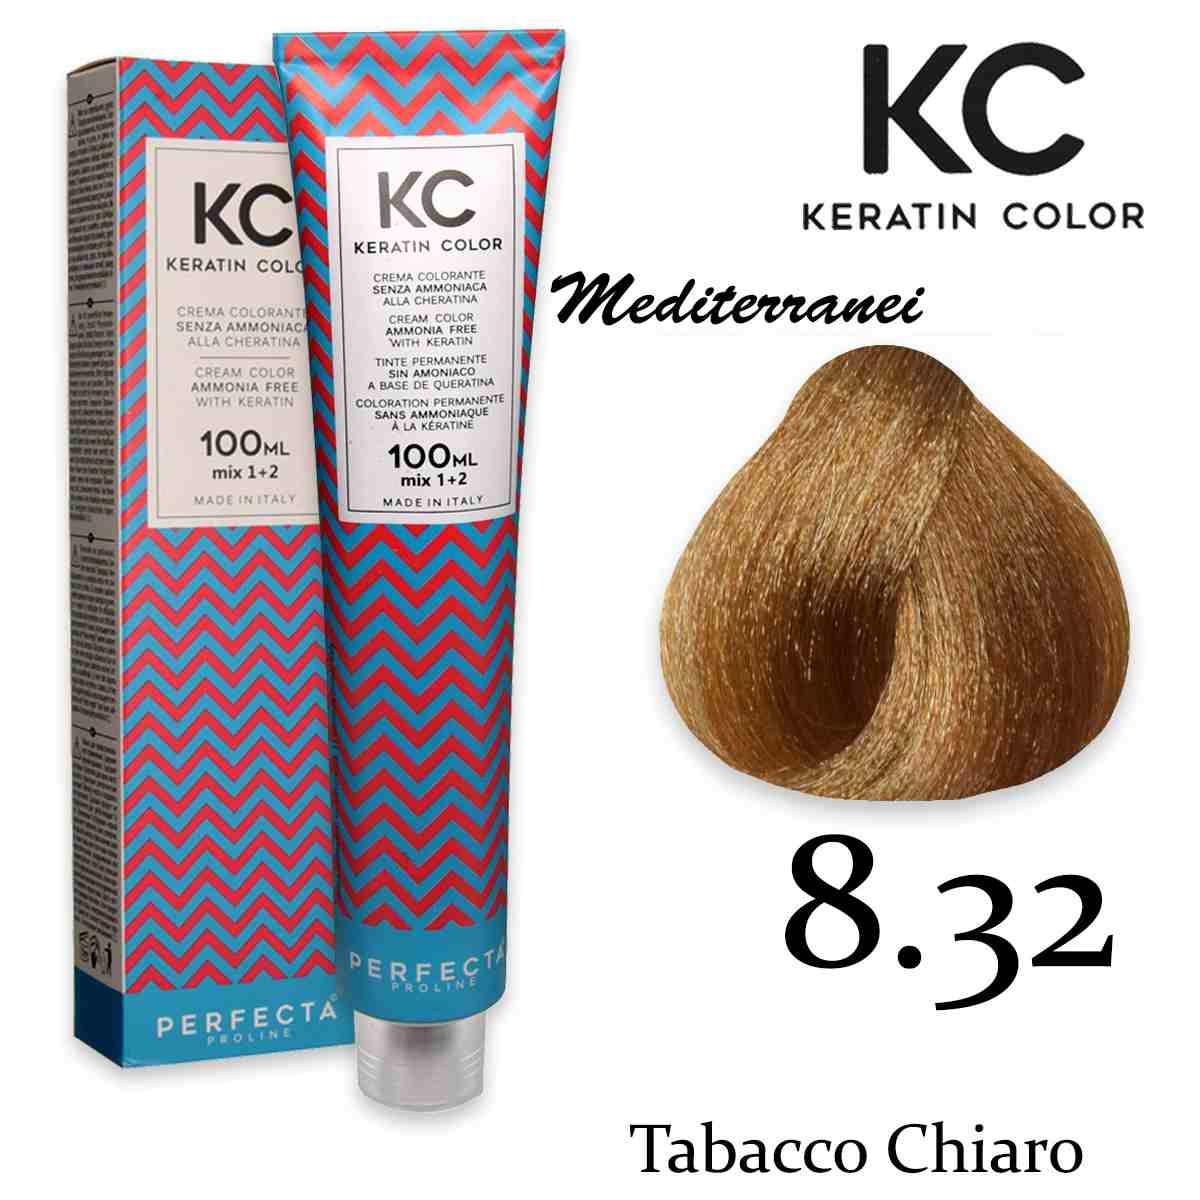 Kc keratin cream color 100 ml 8.32